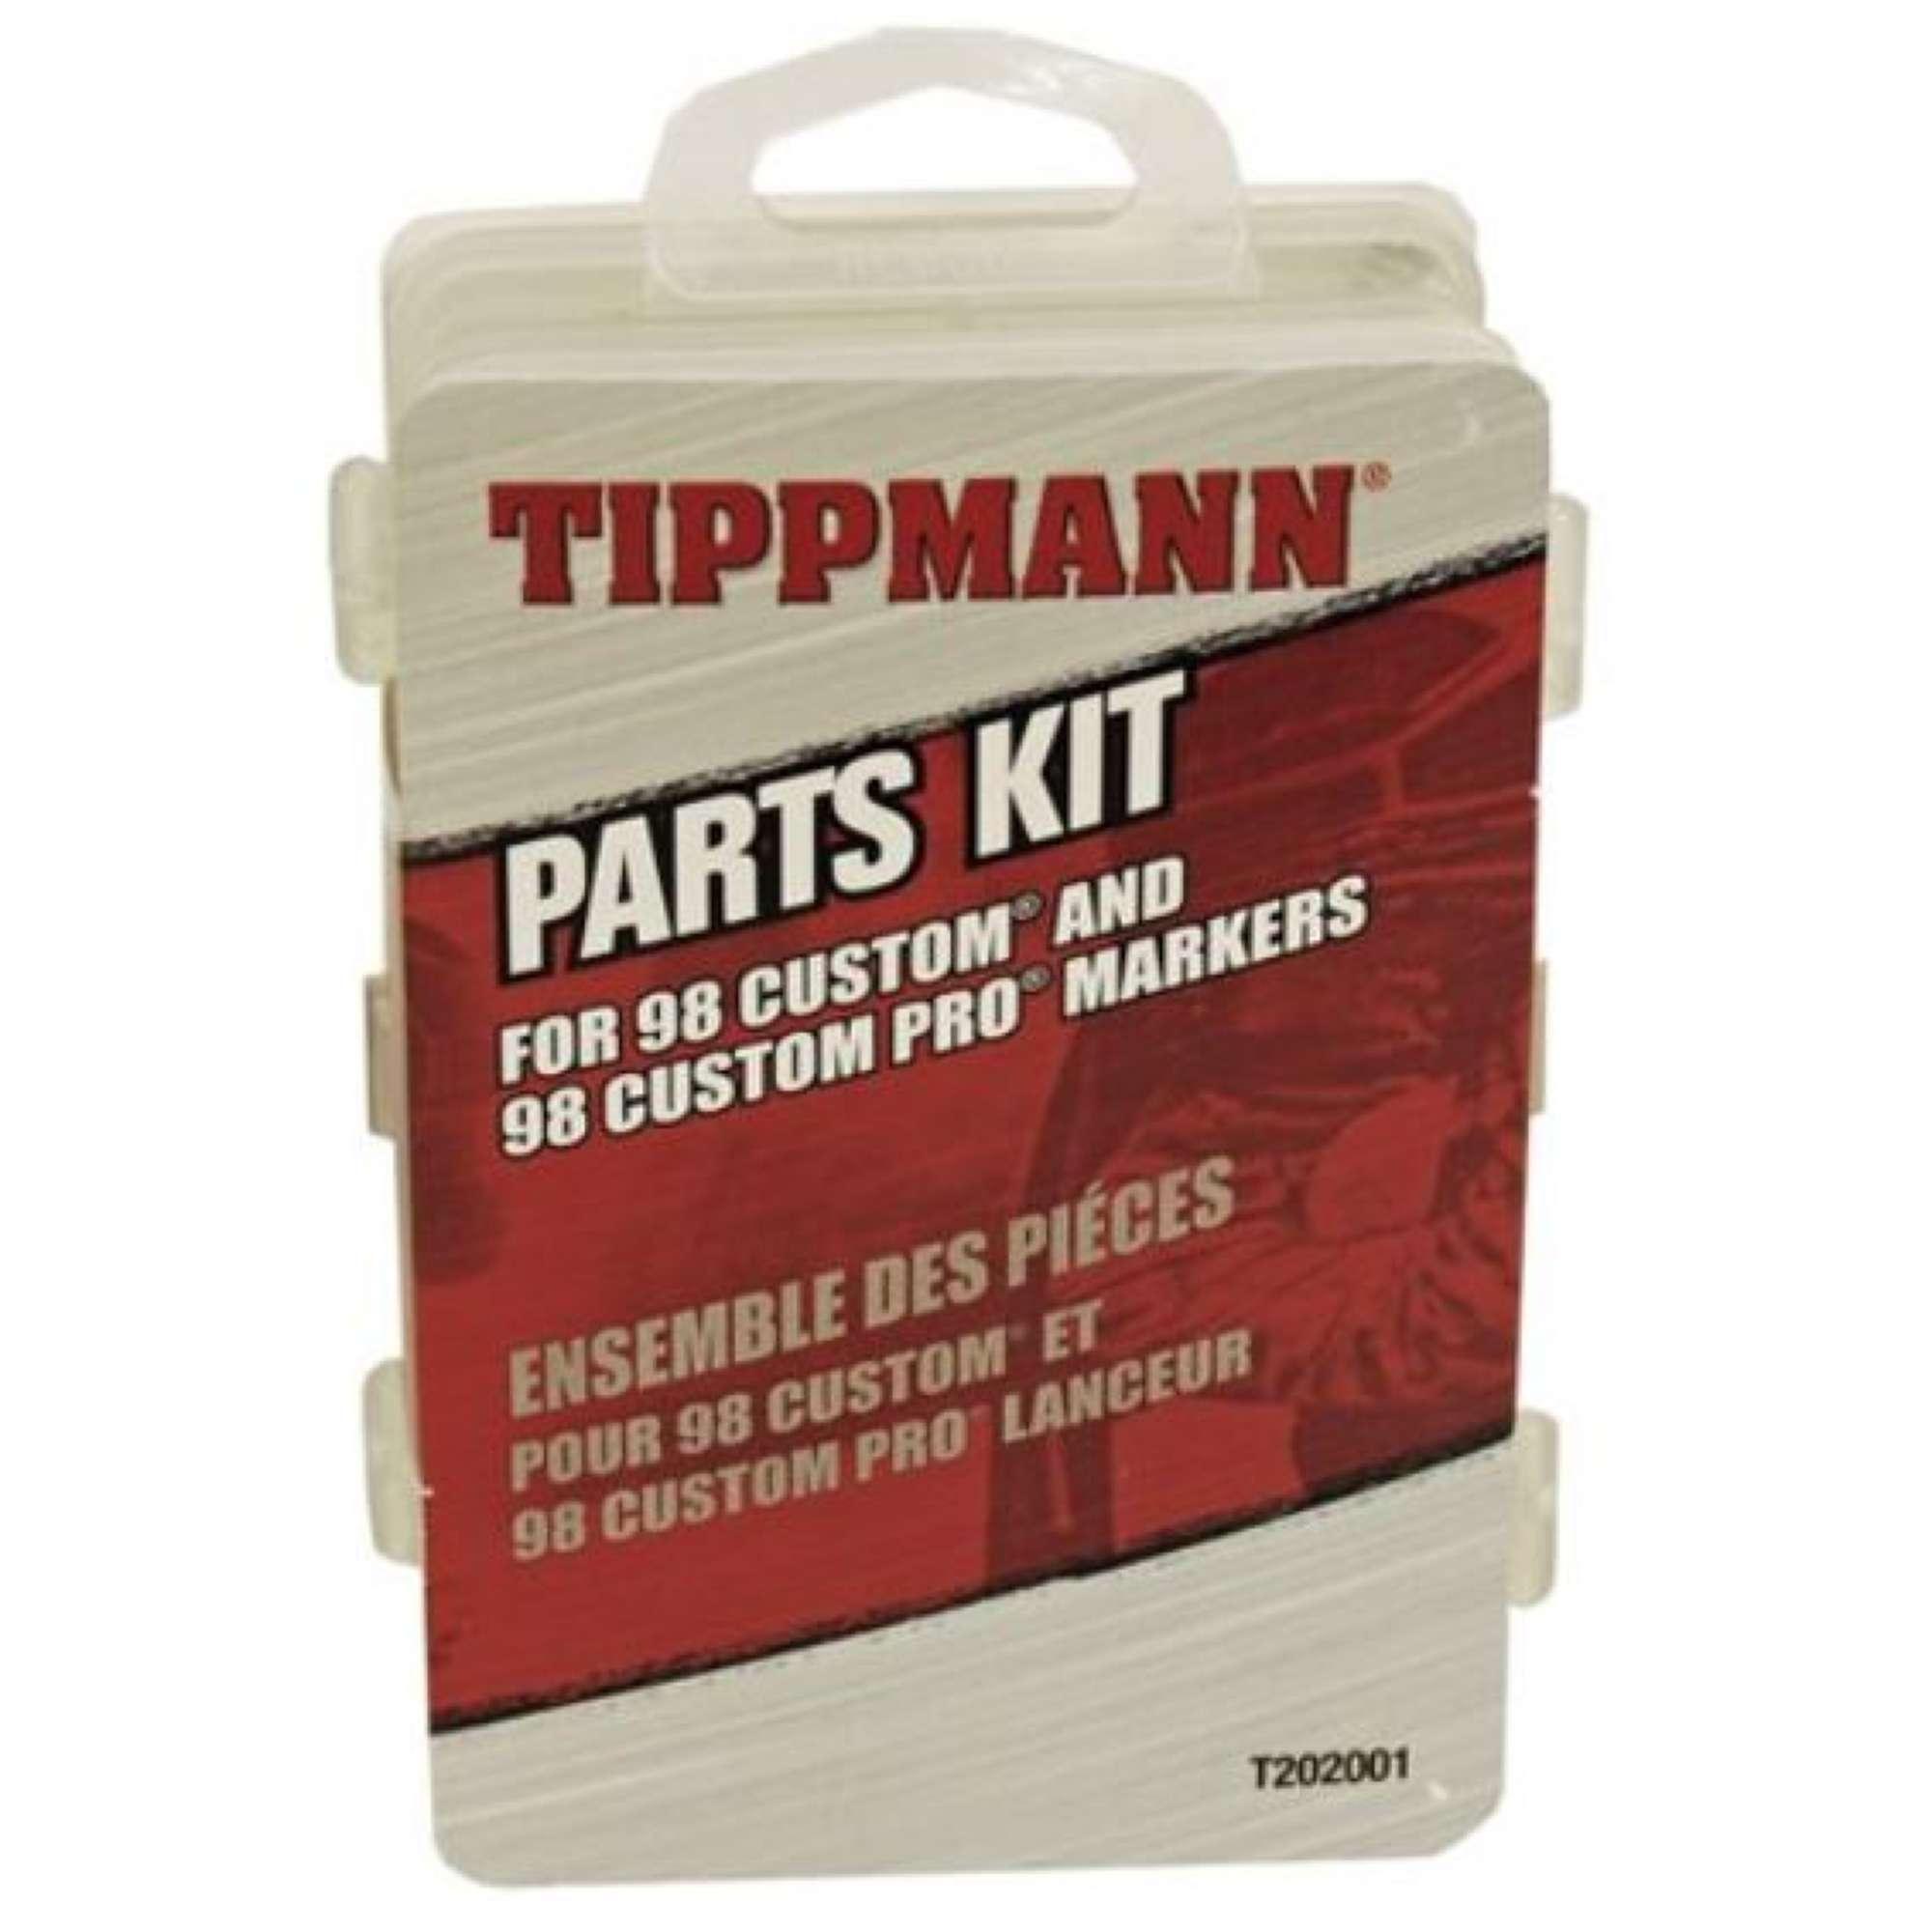 Tippmann Parts Kit for Model 98 Paintball Marker